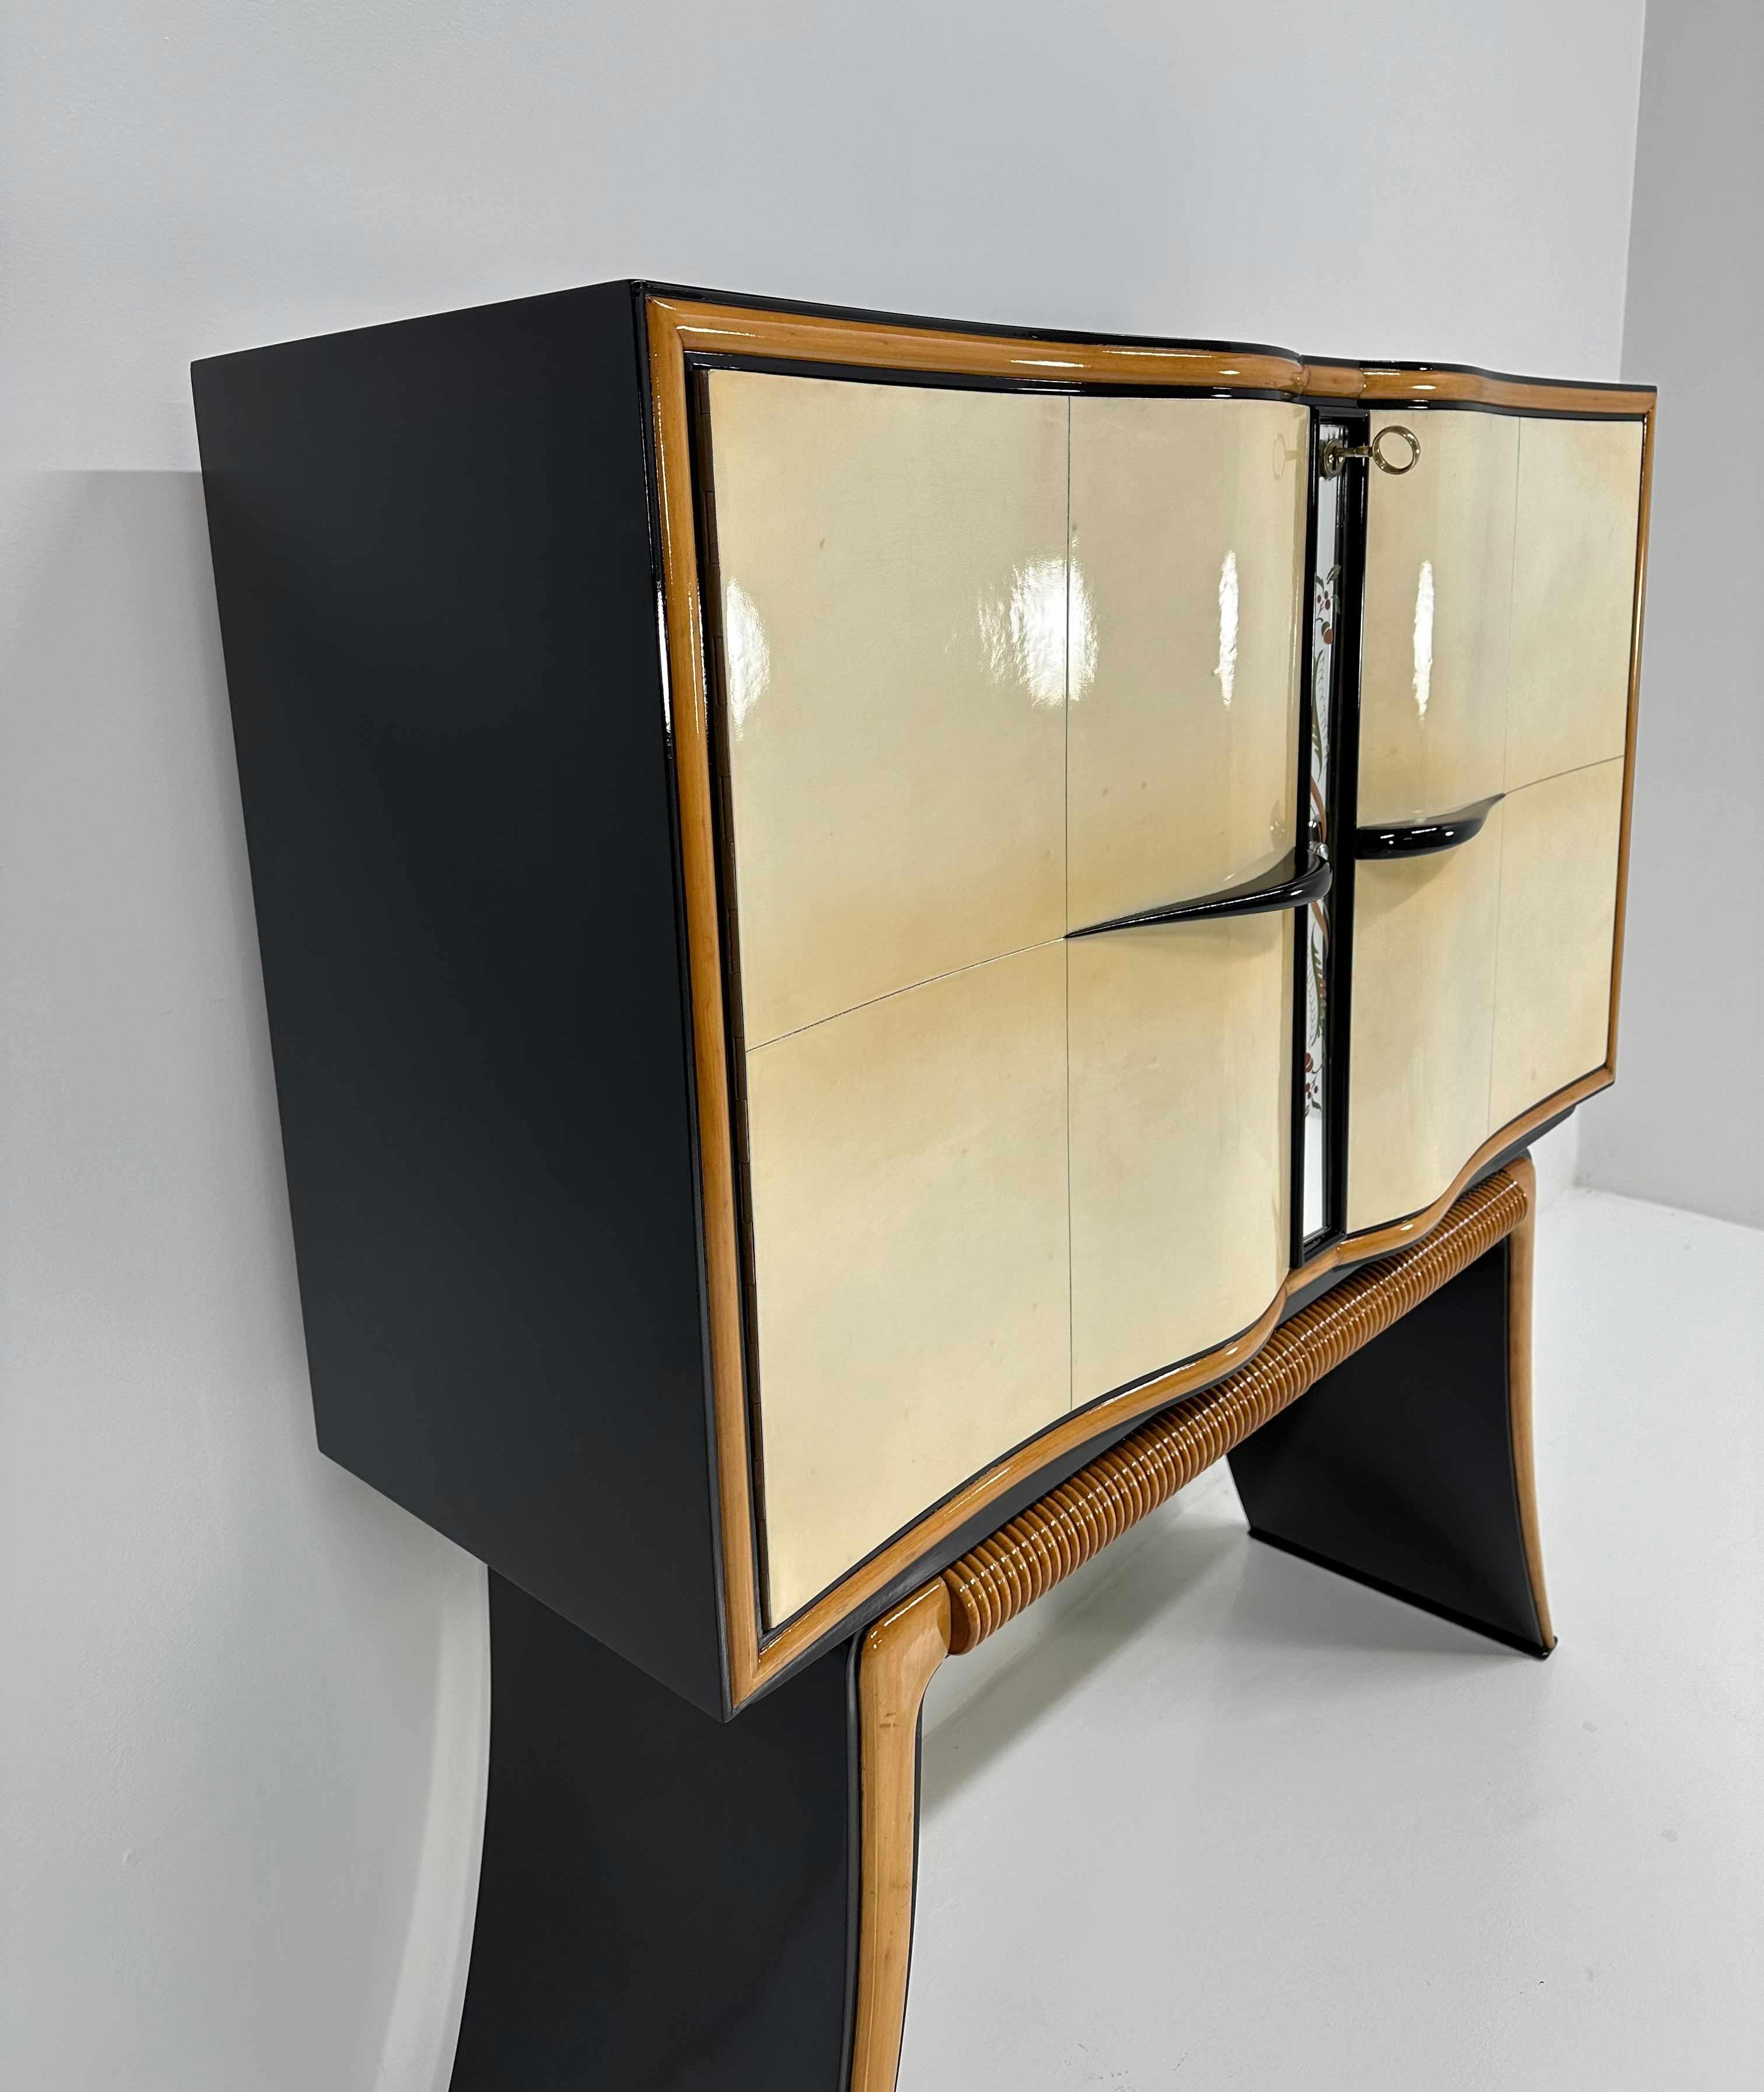 Italian Art Deco Paolo Buffa Parchment, Maple, Black, Mirrors Bar Cabinet, 40s For Sale 2